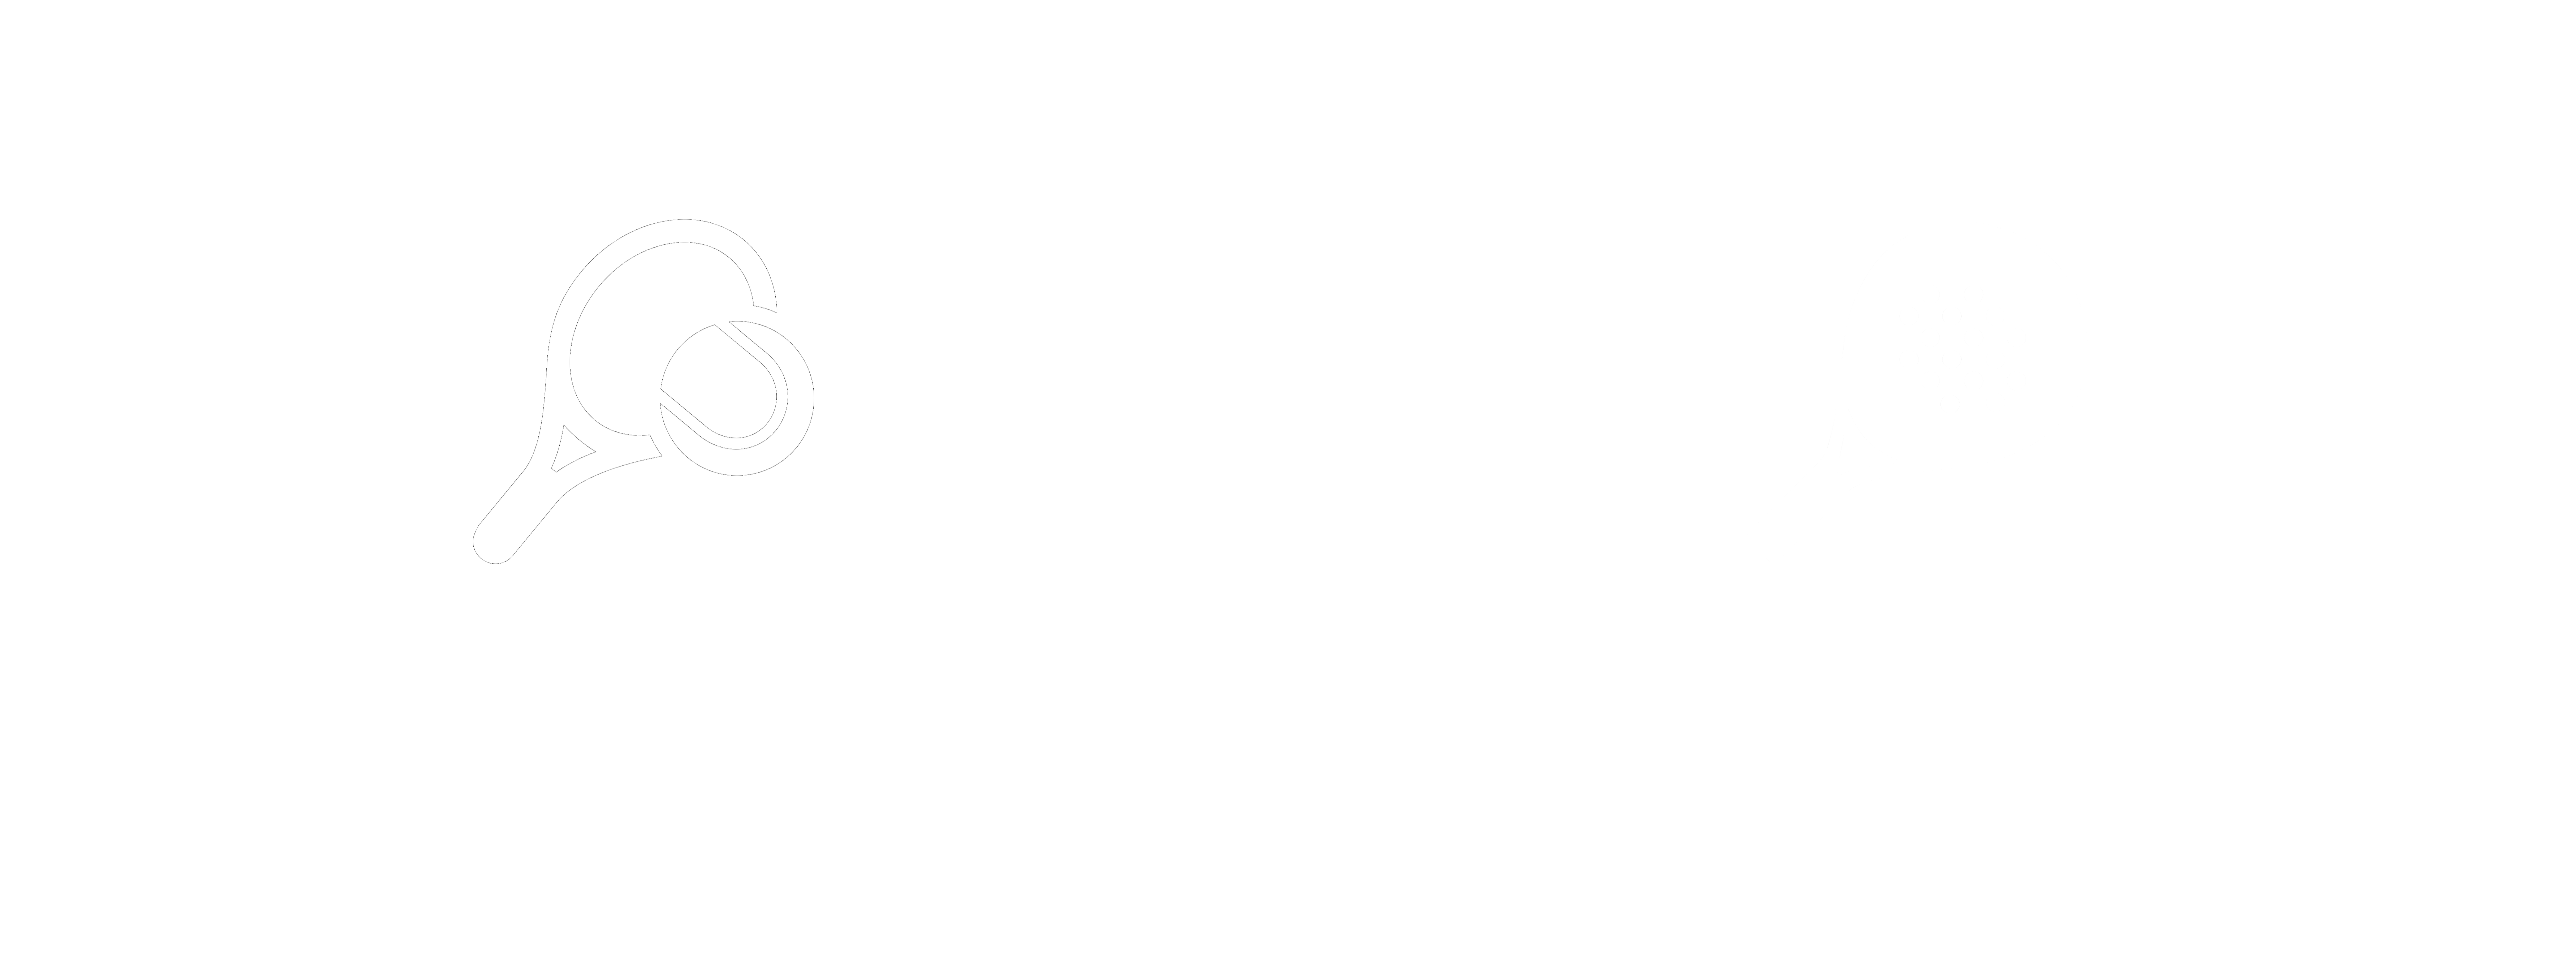 Kavd – Tennis Padel